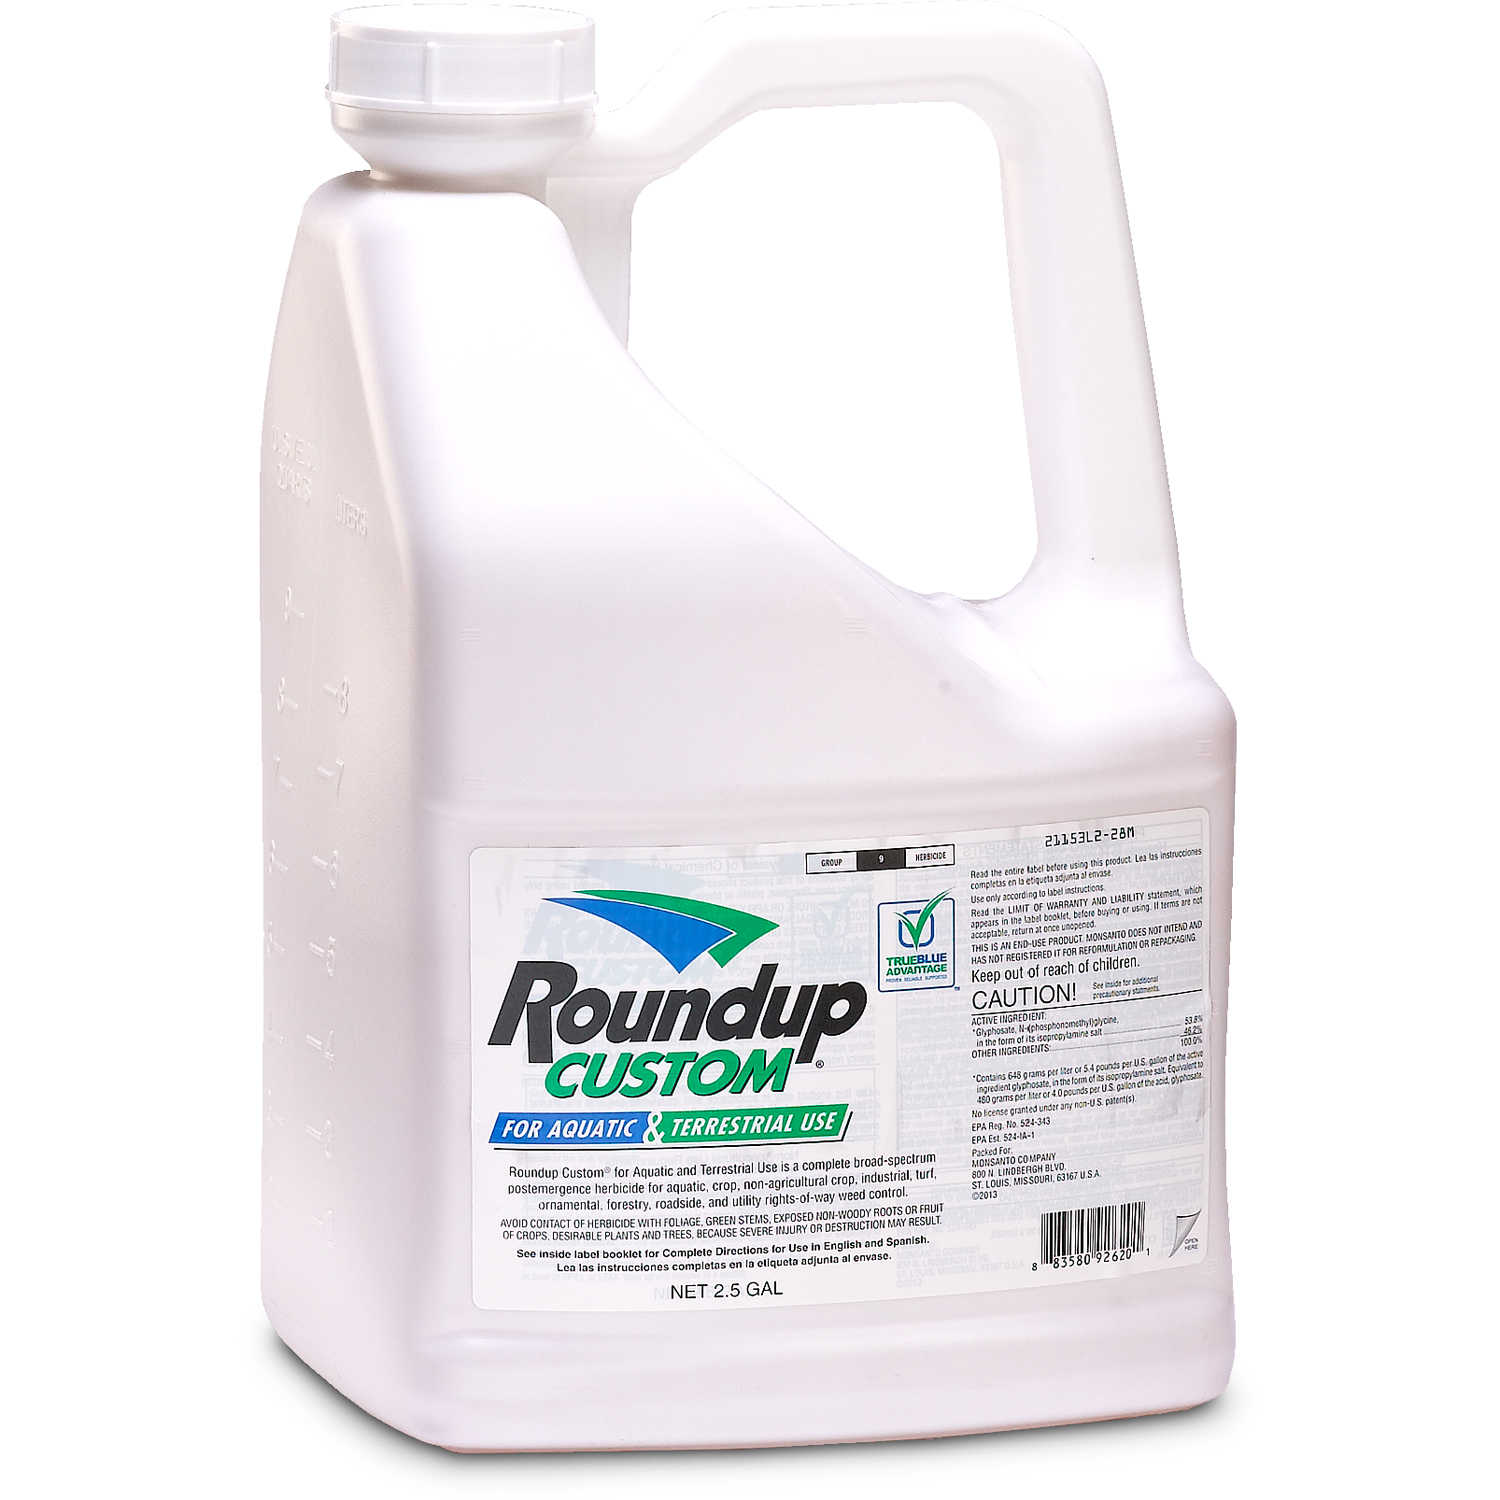 Herbicide Roundup Ultra Plus à base de glyphosate total. 500 cmXNUMX.